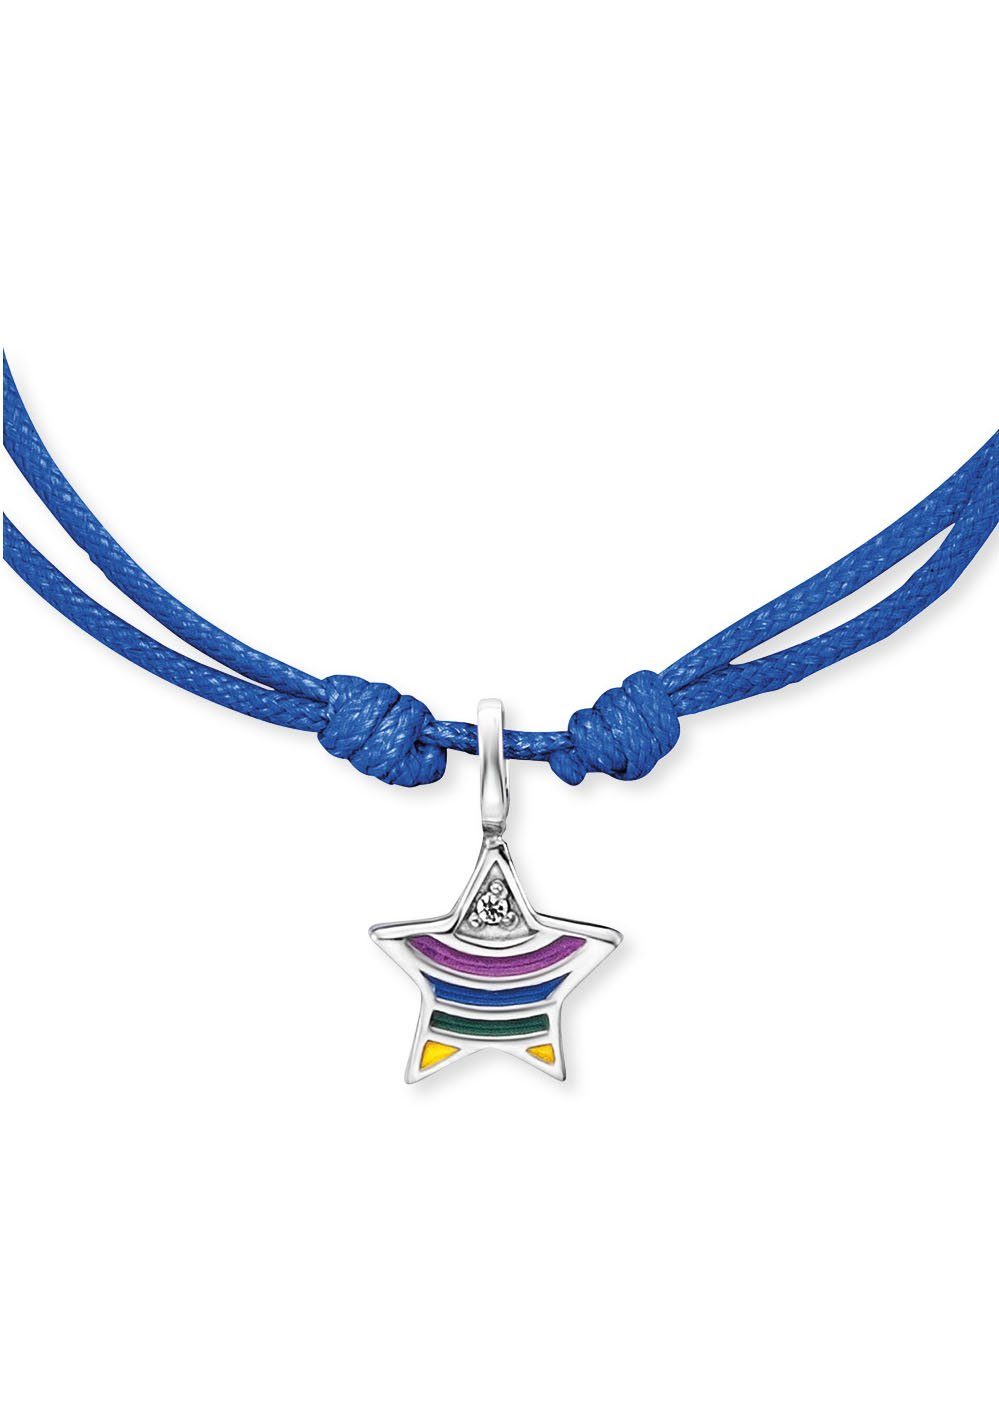 Herzengel rainbow, Stern HEB-STAR-RAINBOW, Armband mit Emaille